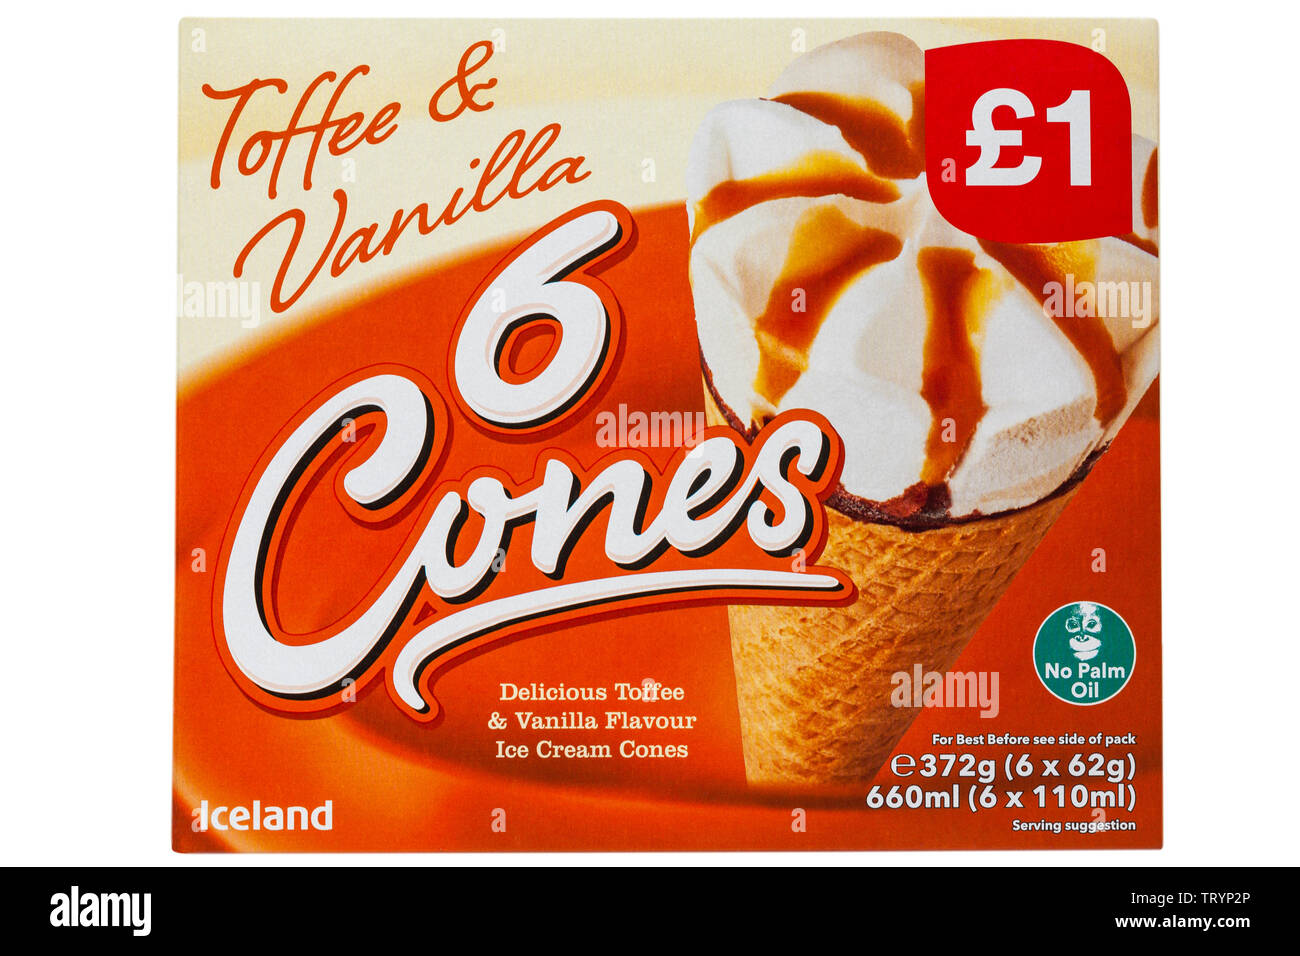 Scatola di Islanda Toffee & vaniglia 6 coni delizioso toffee & aroma vaniglia coni gelato isolati su sfondo bianco Foto Stock